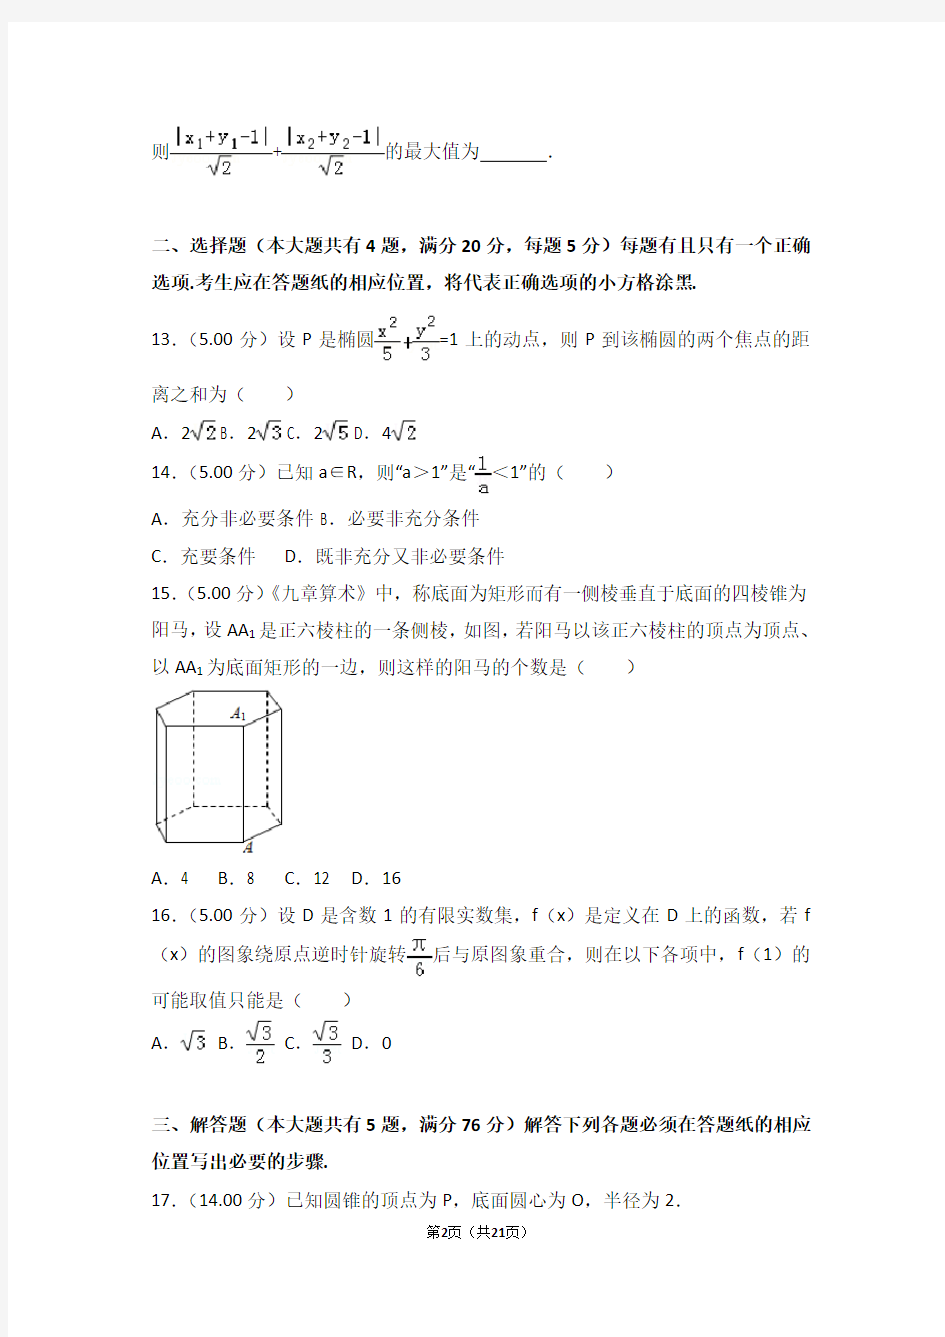 2018年上海市高考数学试卷(高考真题)